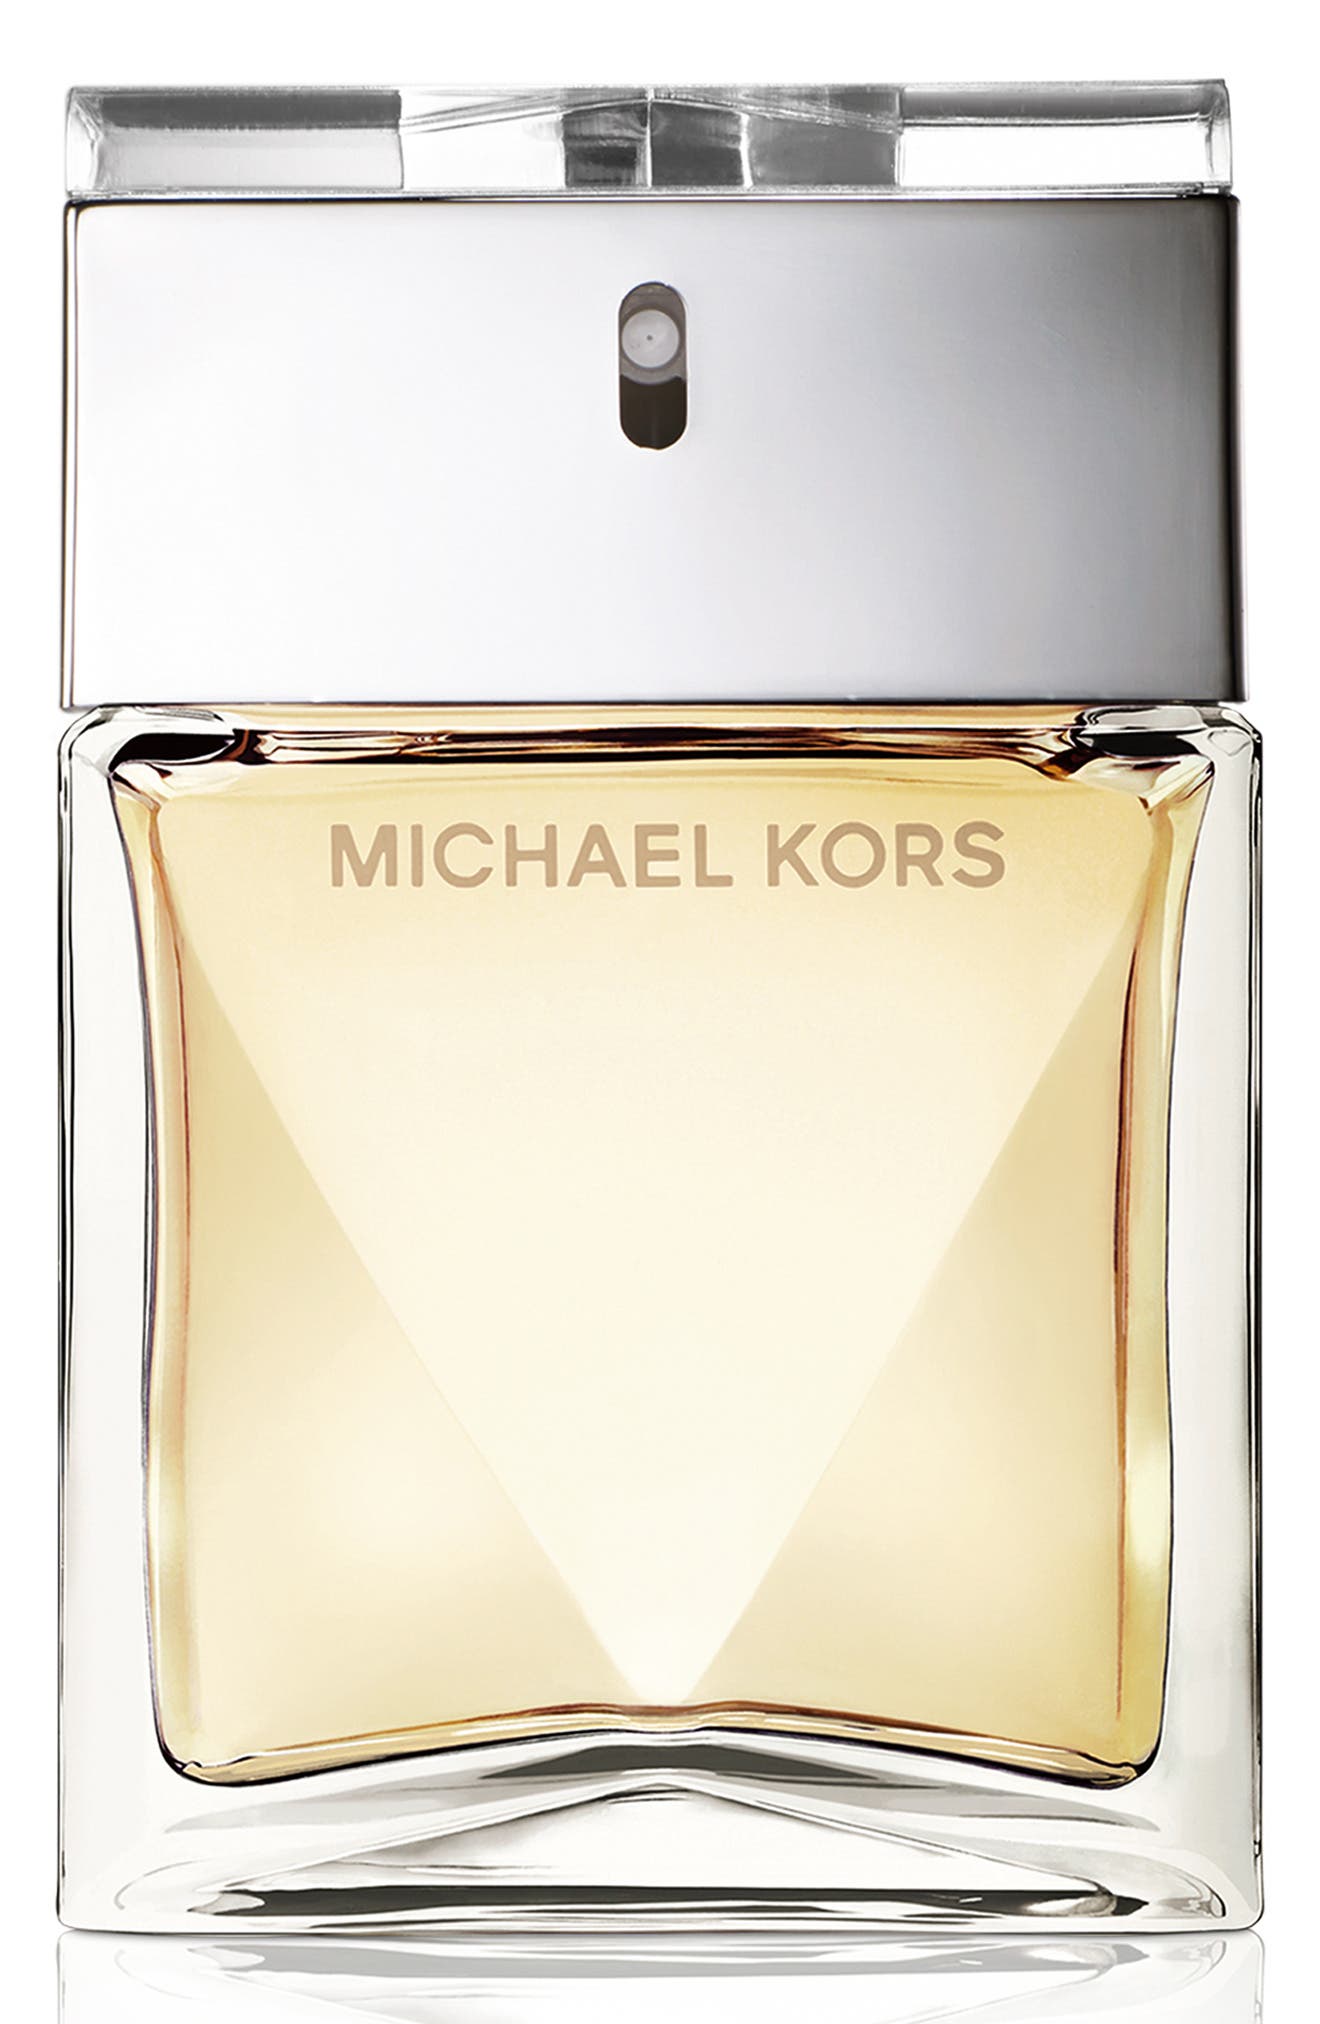 michael kors latest perfume